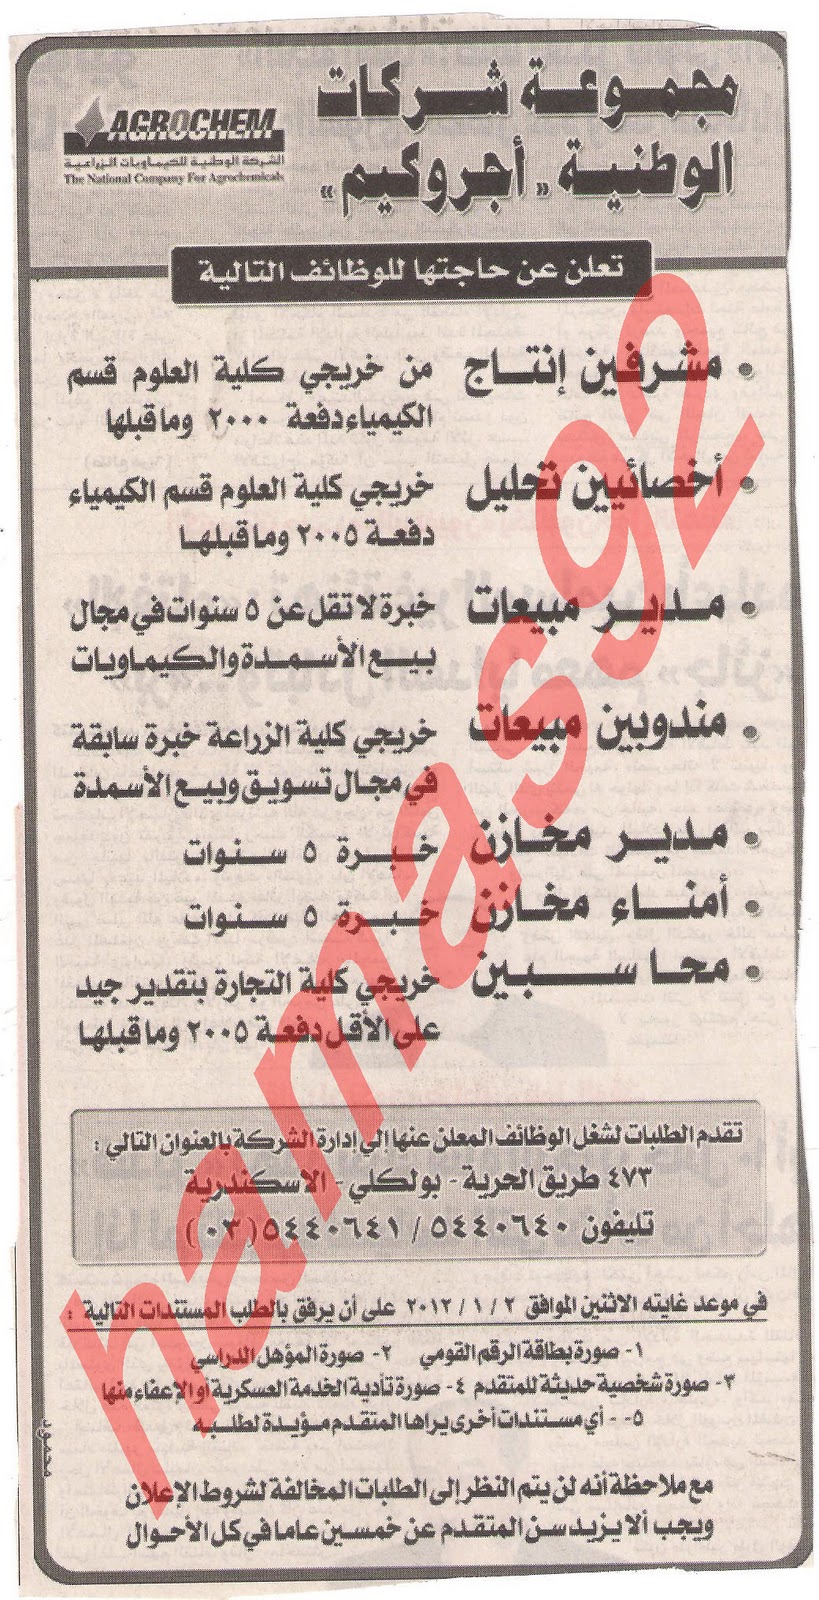 وظائف خالية من جريدة المصرى اليوم الثلاثاء 27 ديسمبر 2011  Picture+006